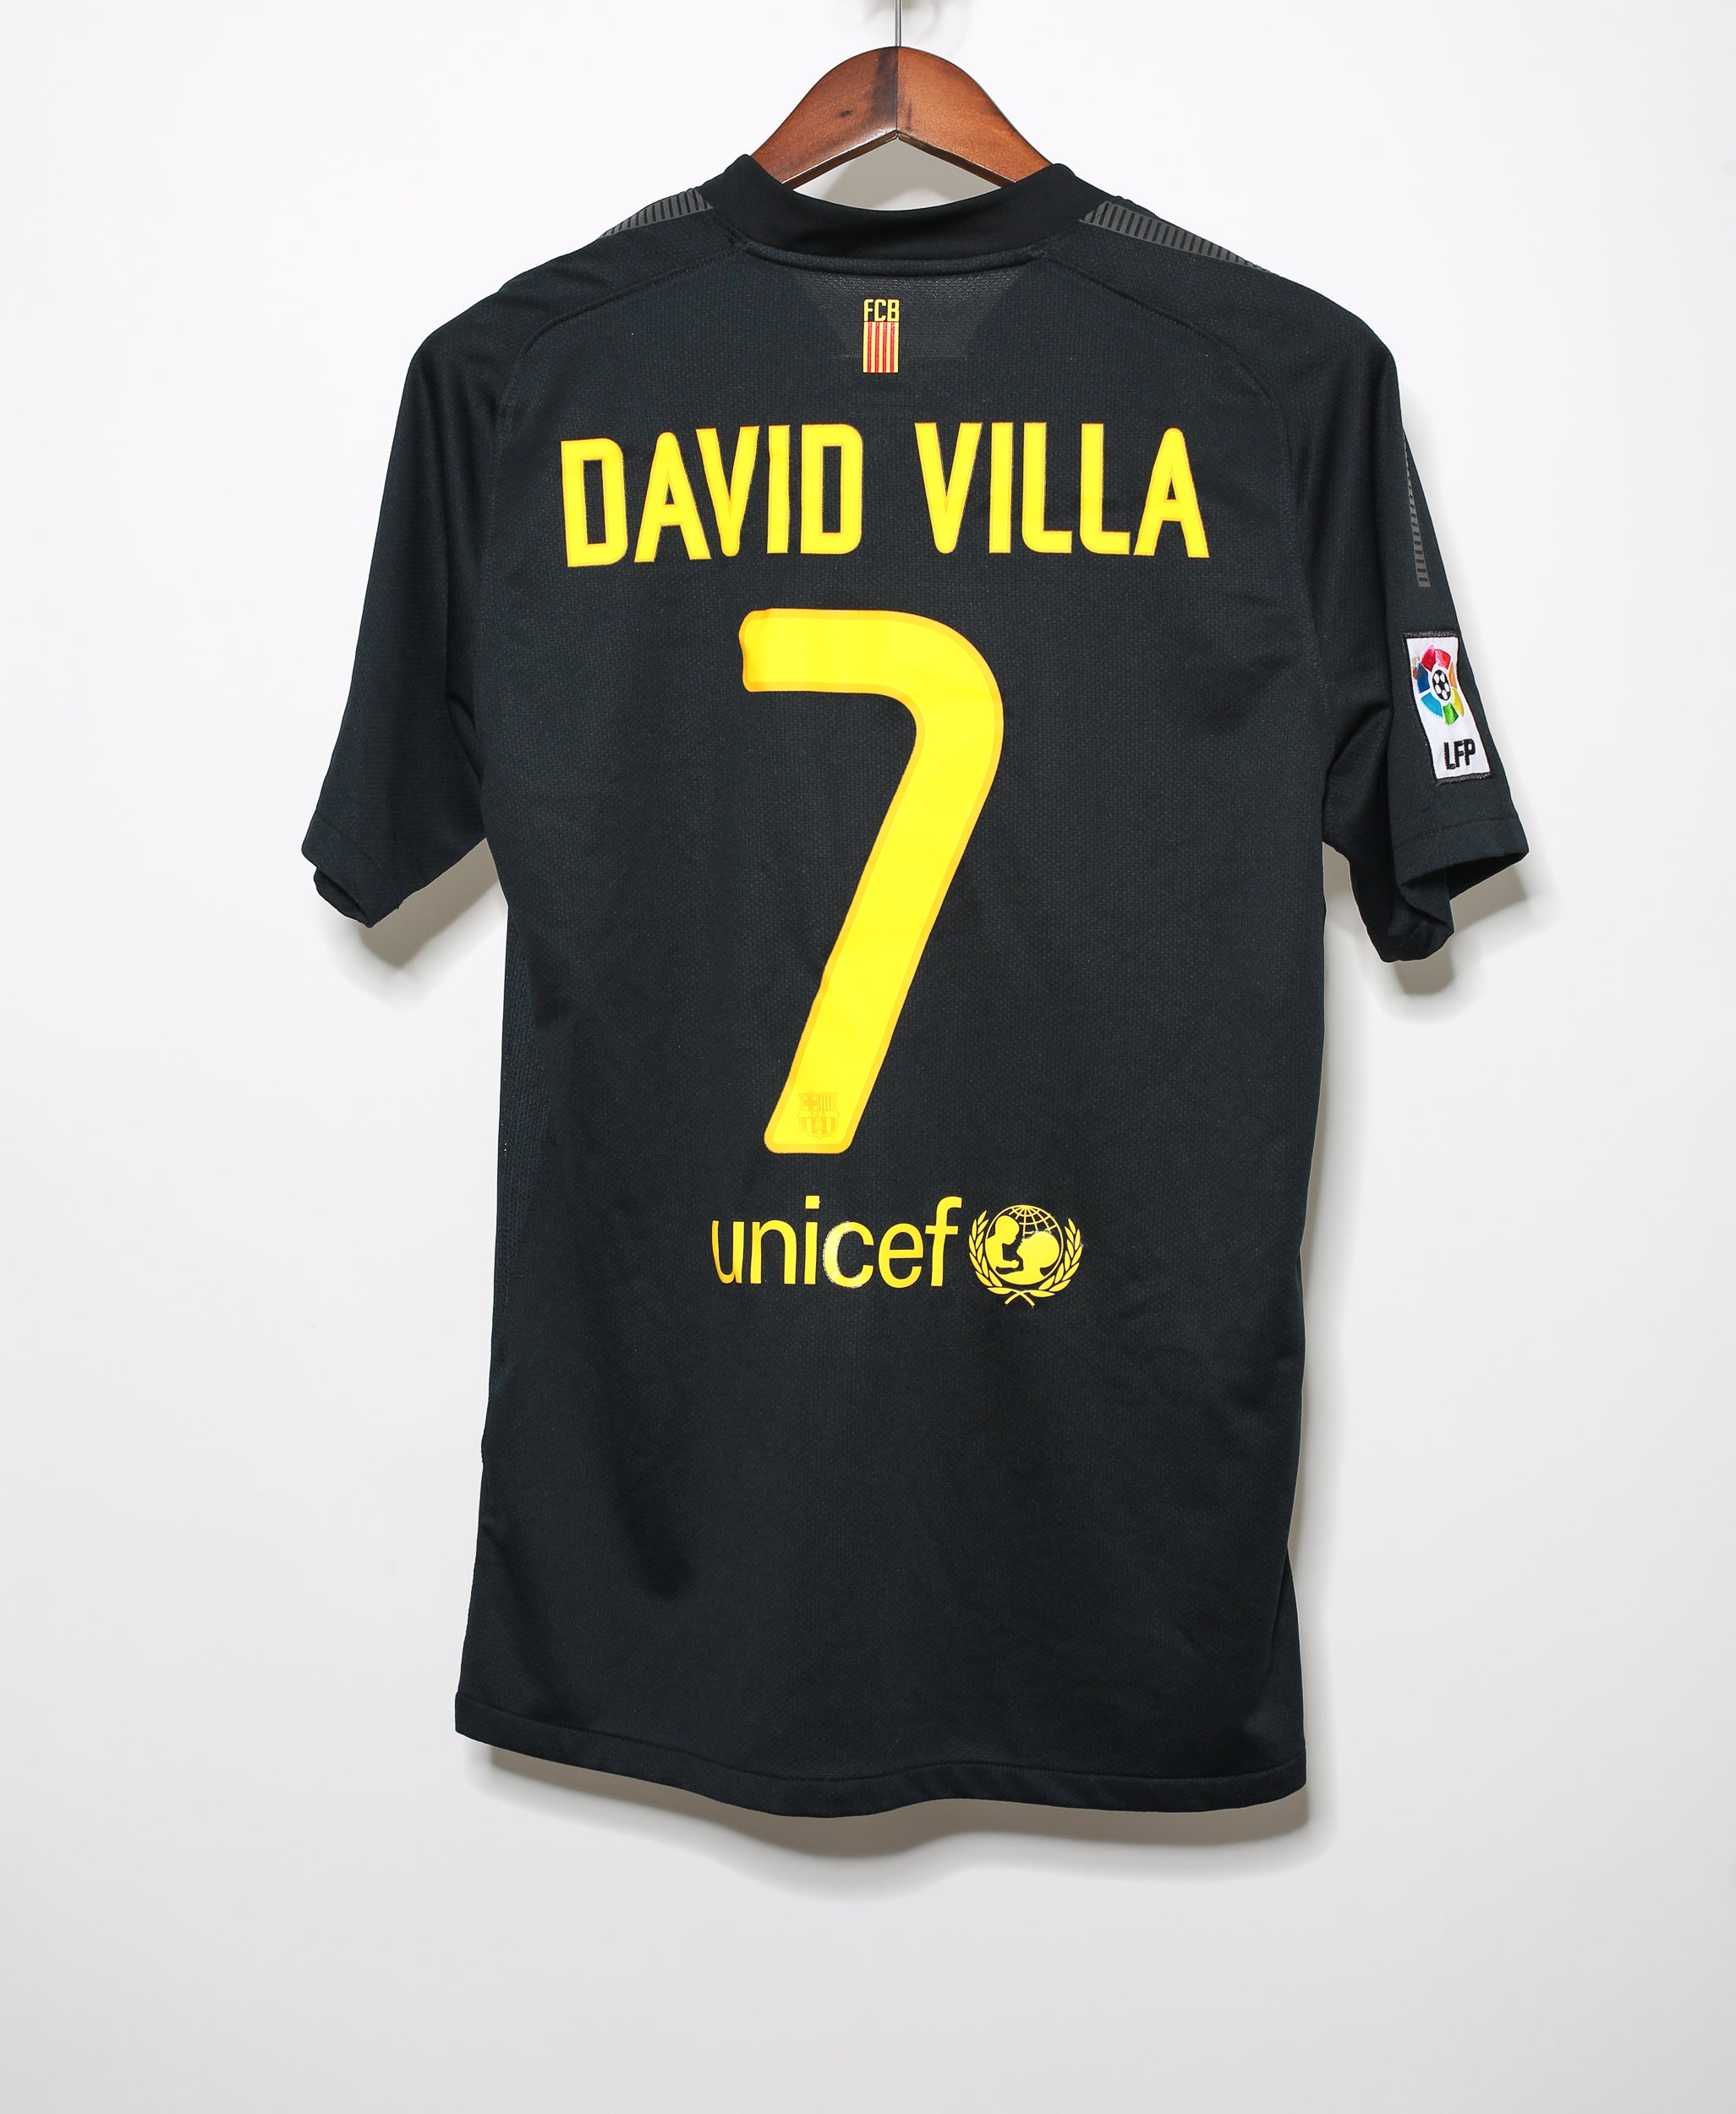 David Villa Barcelona shirt